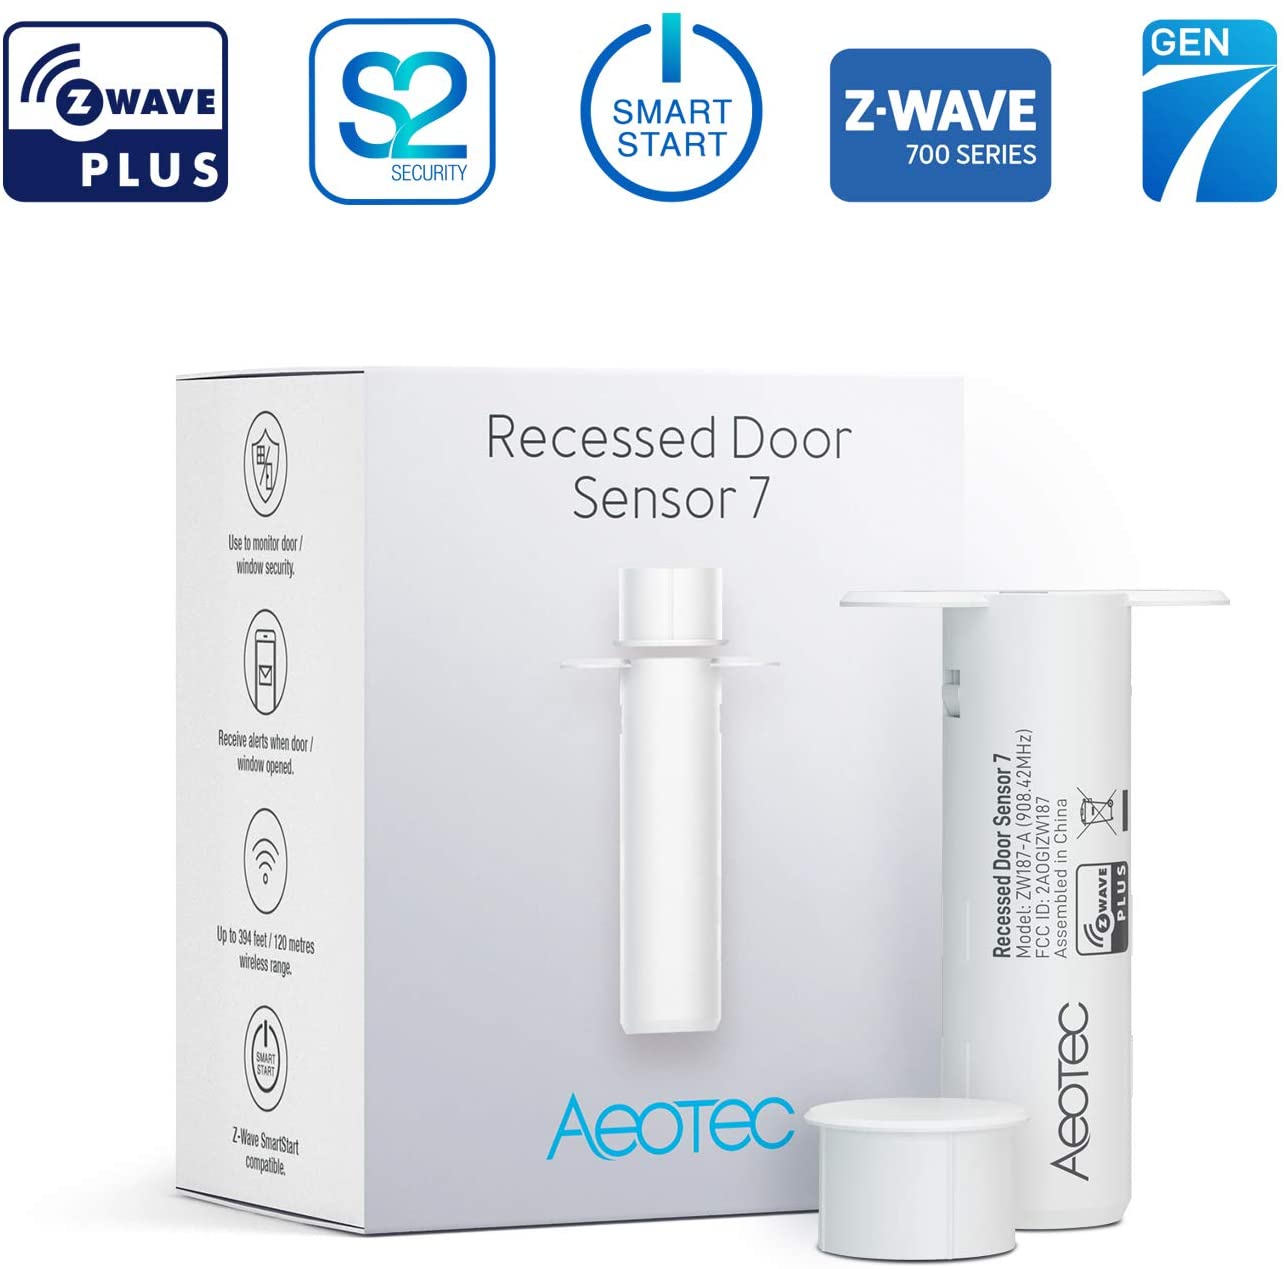 Aeotec Recessed Door Sensor 7, Z-Wave Plus 700 series, Battery Powered, Smart Start & S2 security - ZW187